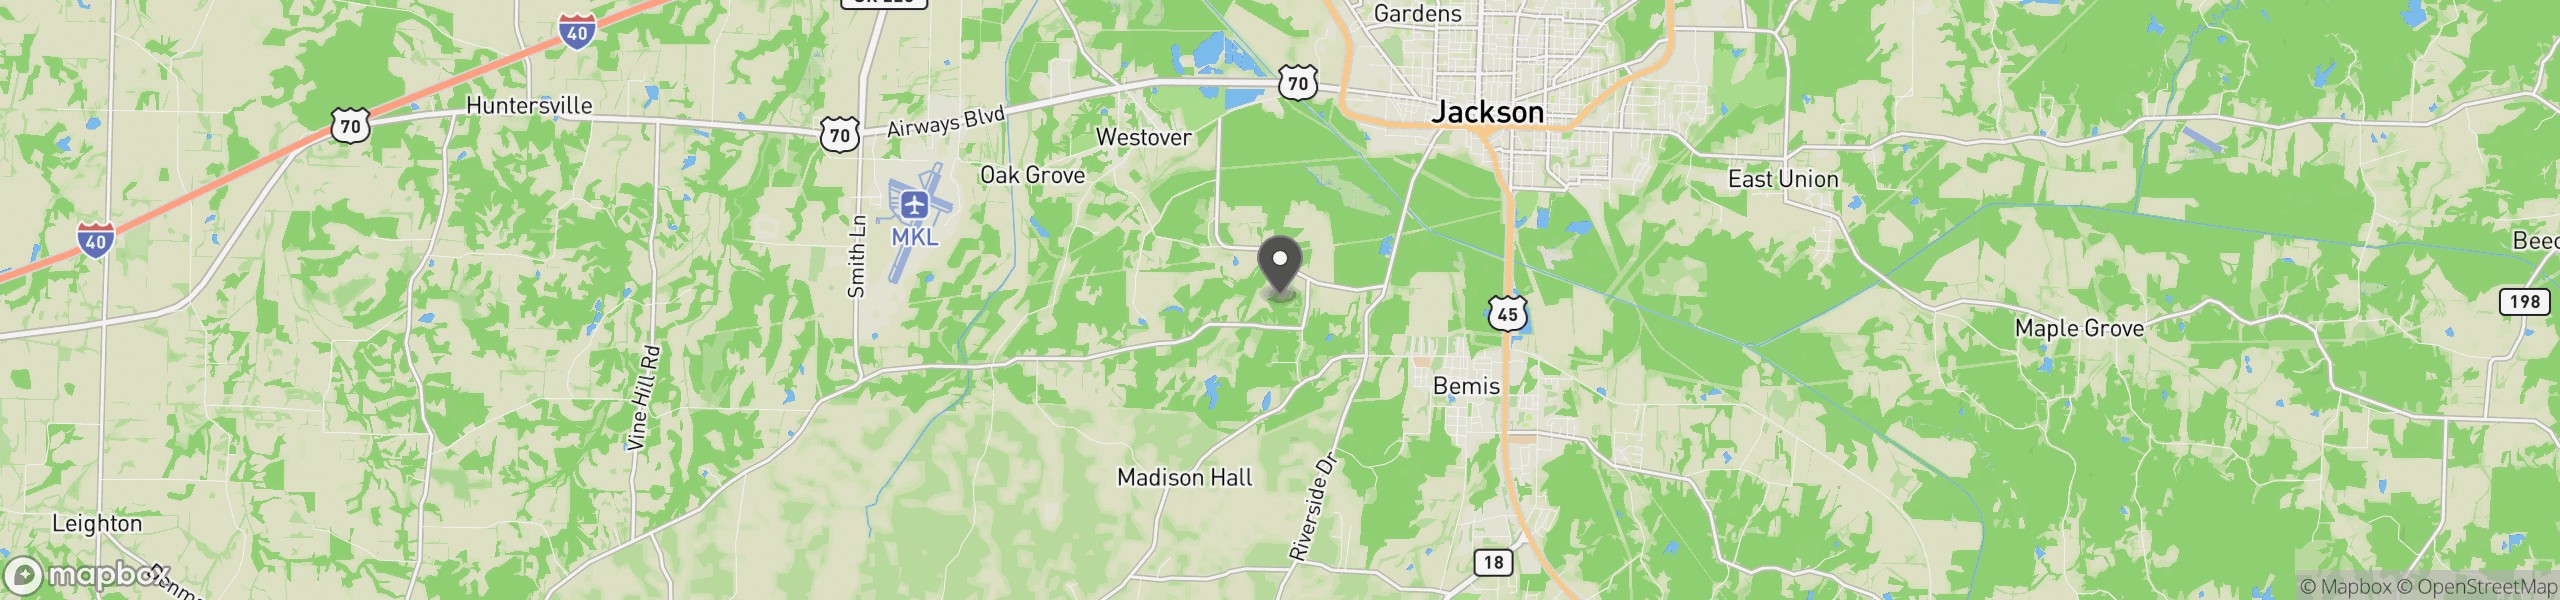 Jackson, TN 38301